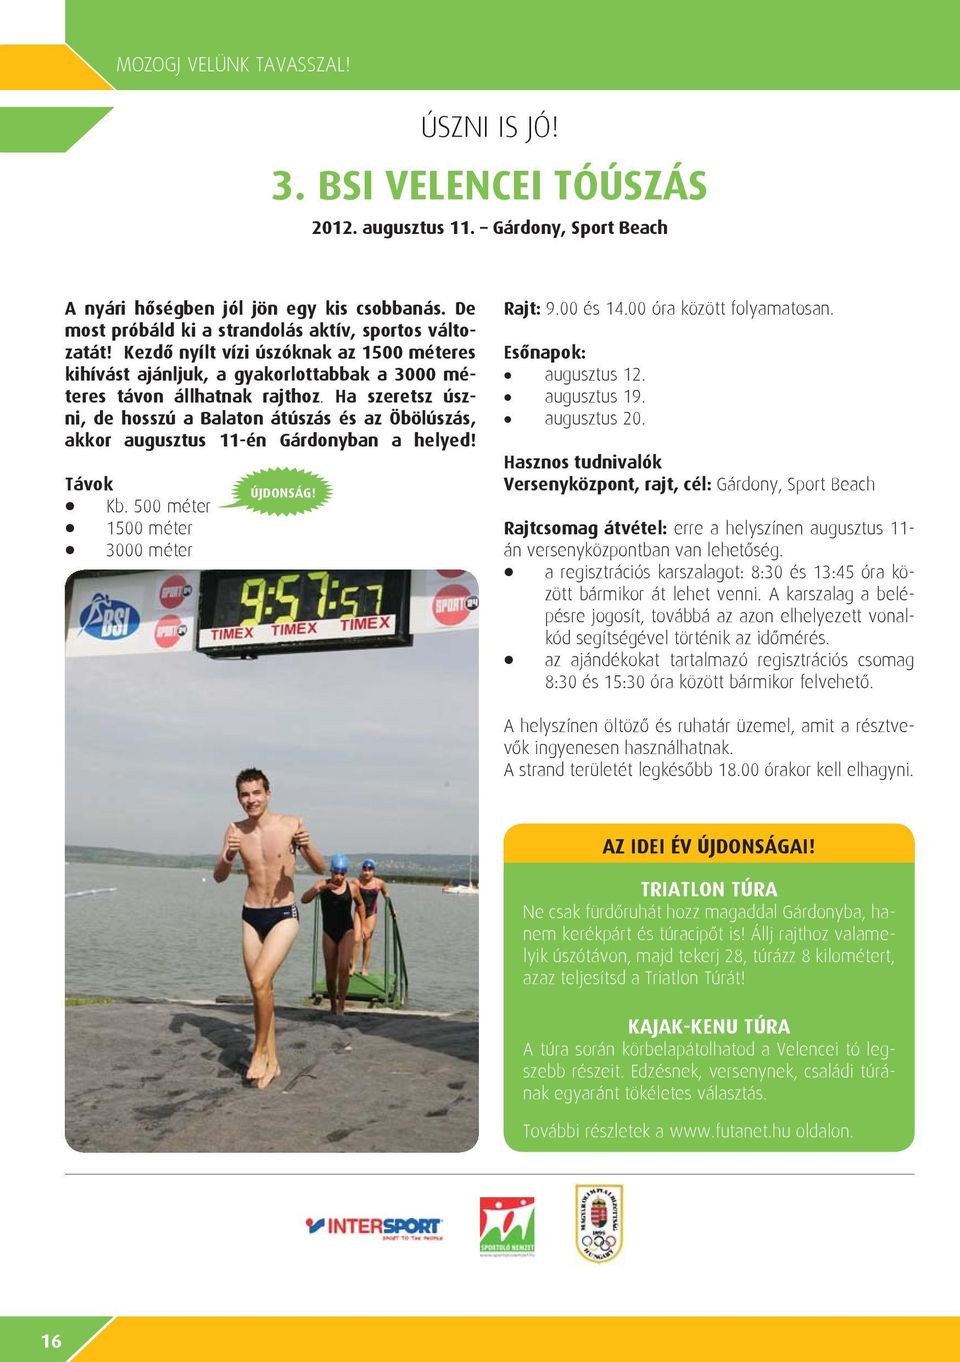 Ha szeretsz úszni, de hosszú a Balaton átúszás és az Öbölúszás, akkor augusztus 11-én Gárdonyban a helyed! Távok Kb. 500 méter 1500 méter 3000 méter ÚJDONSÁG! Rajt: 9.00 és 14.